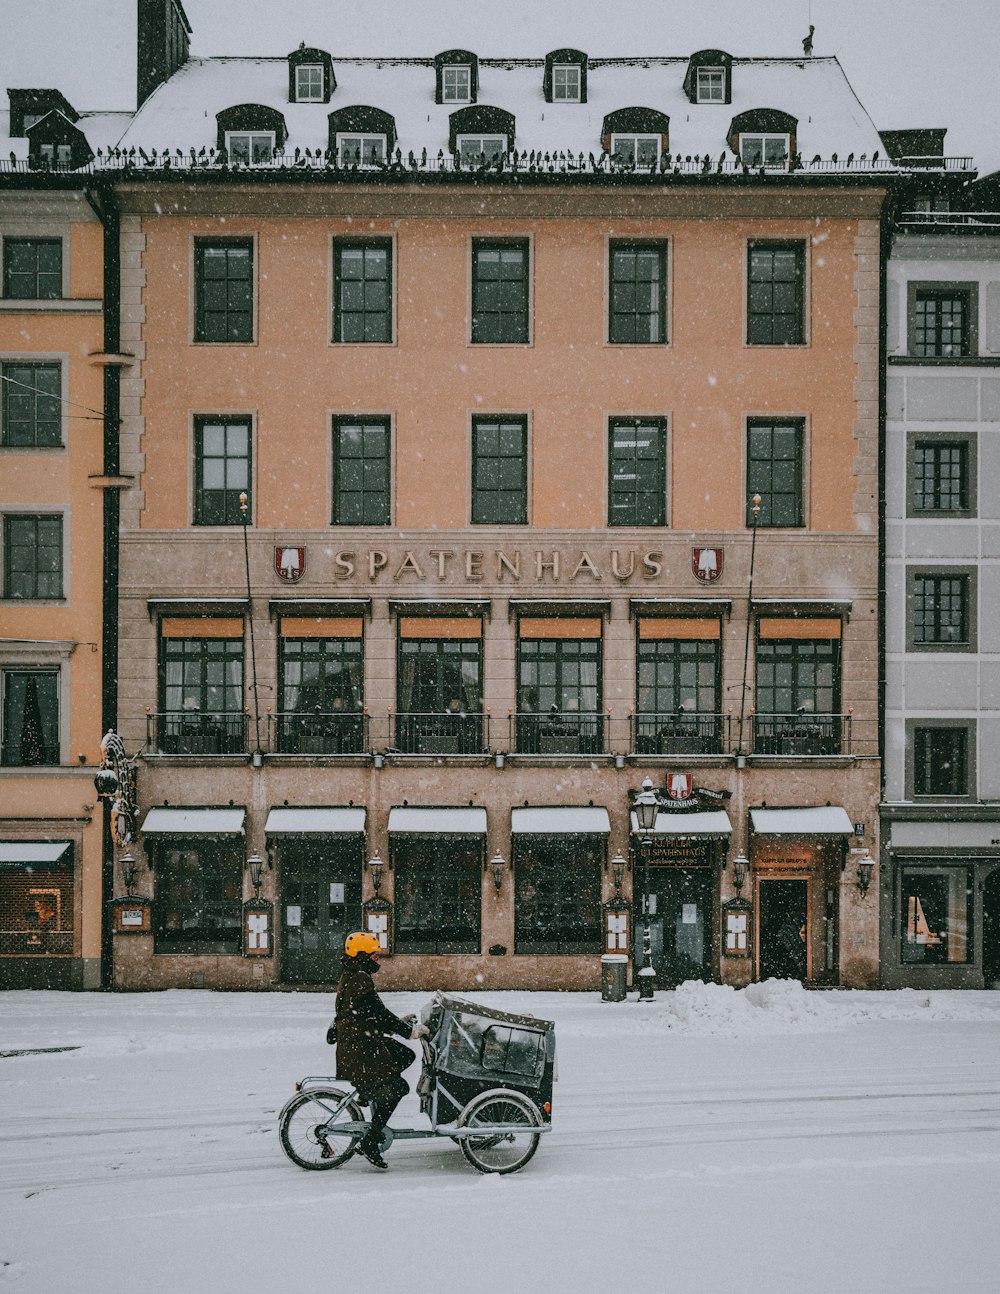 pessoa que anda de moto preta na estrada coberta de neve perto do edifício de concreto marrom durante o dia